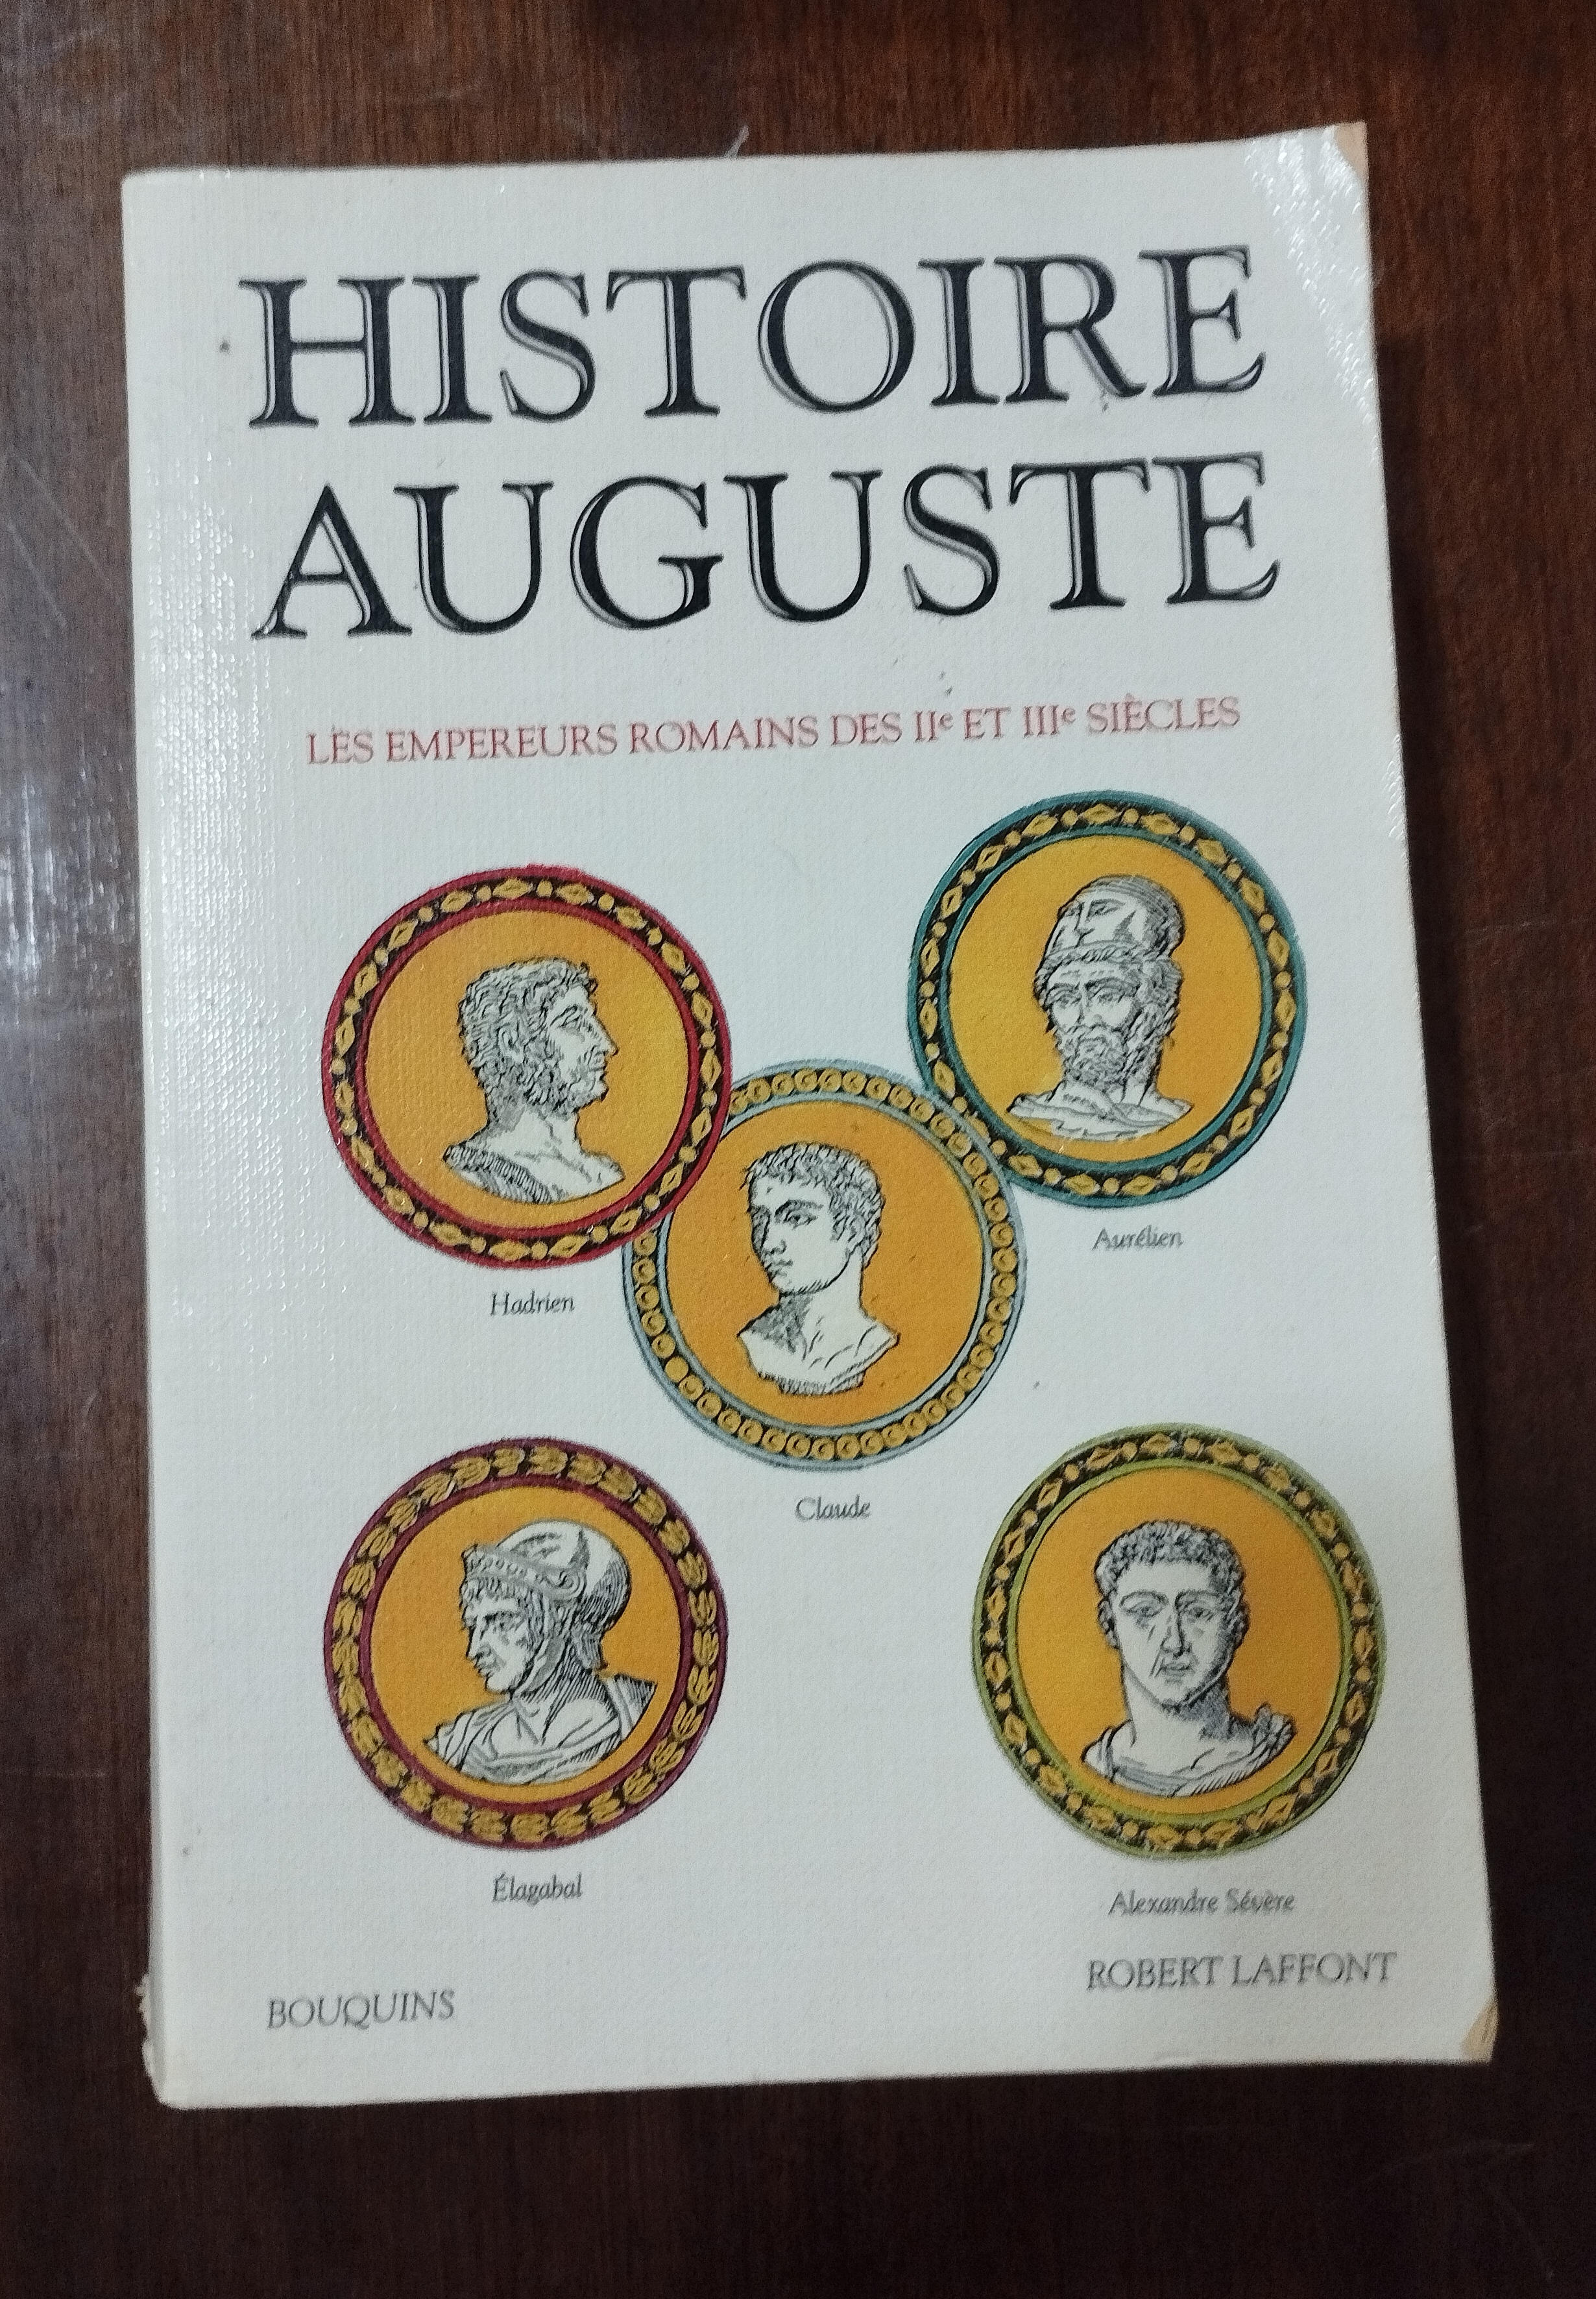 Histoire Auguste: Les empereurs romains des IIe et IIIe siècles - Robert Laffont